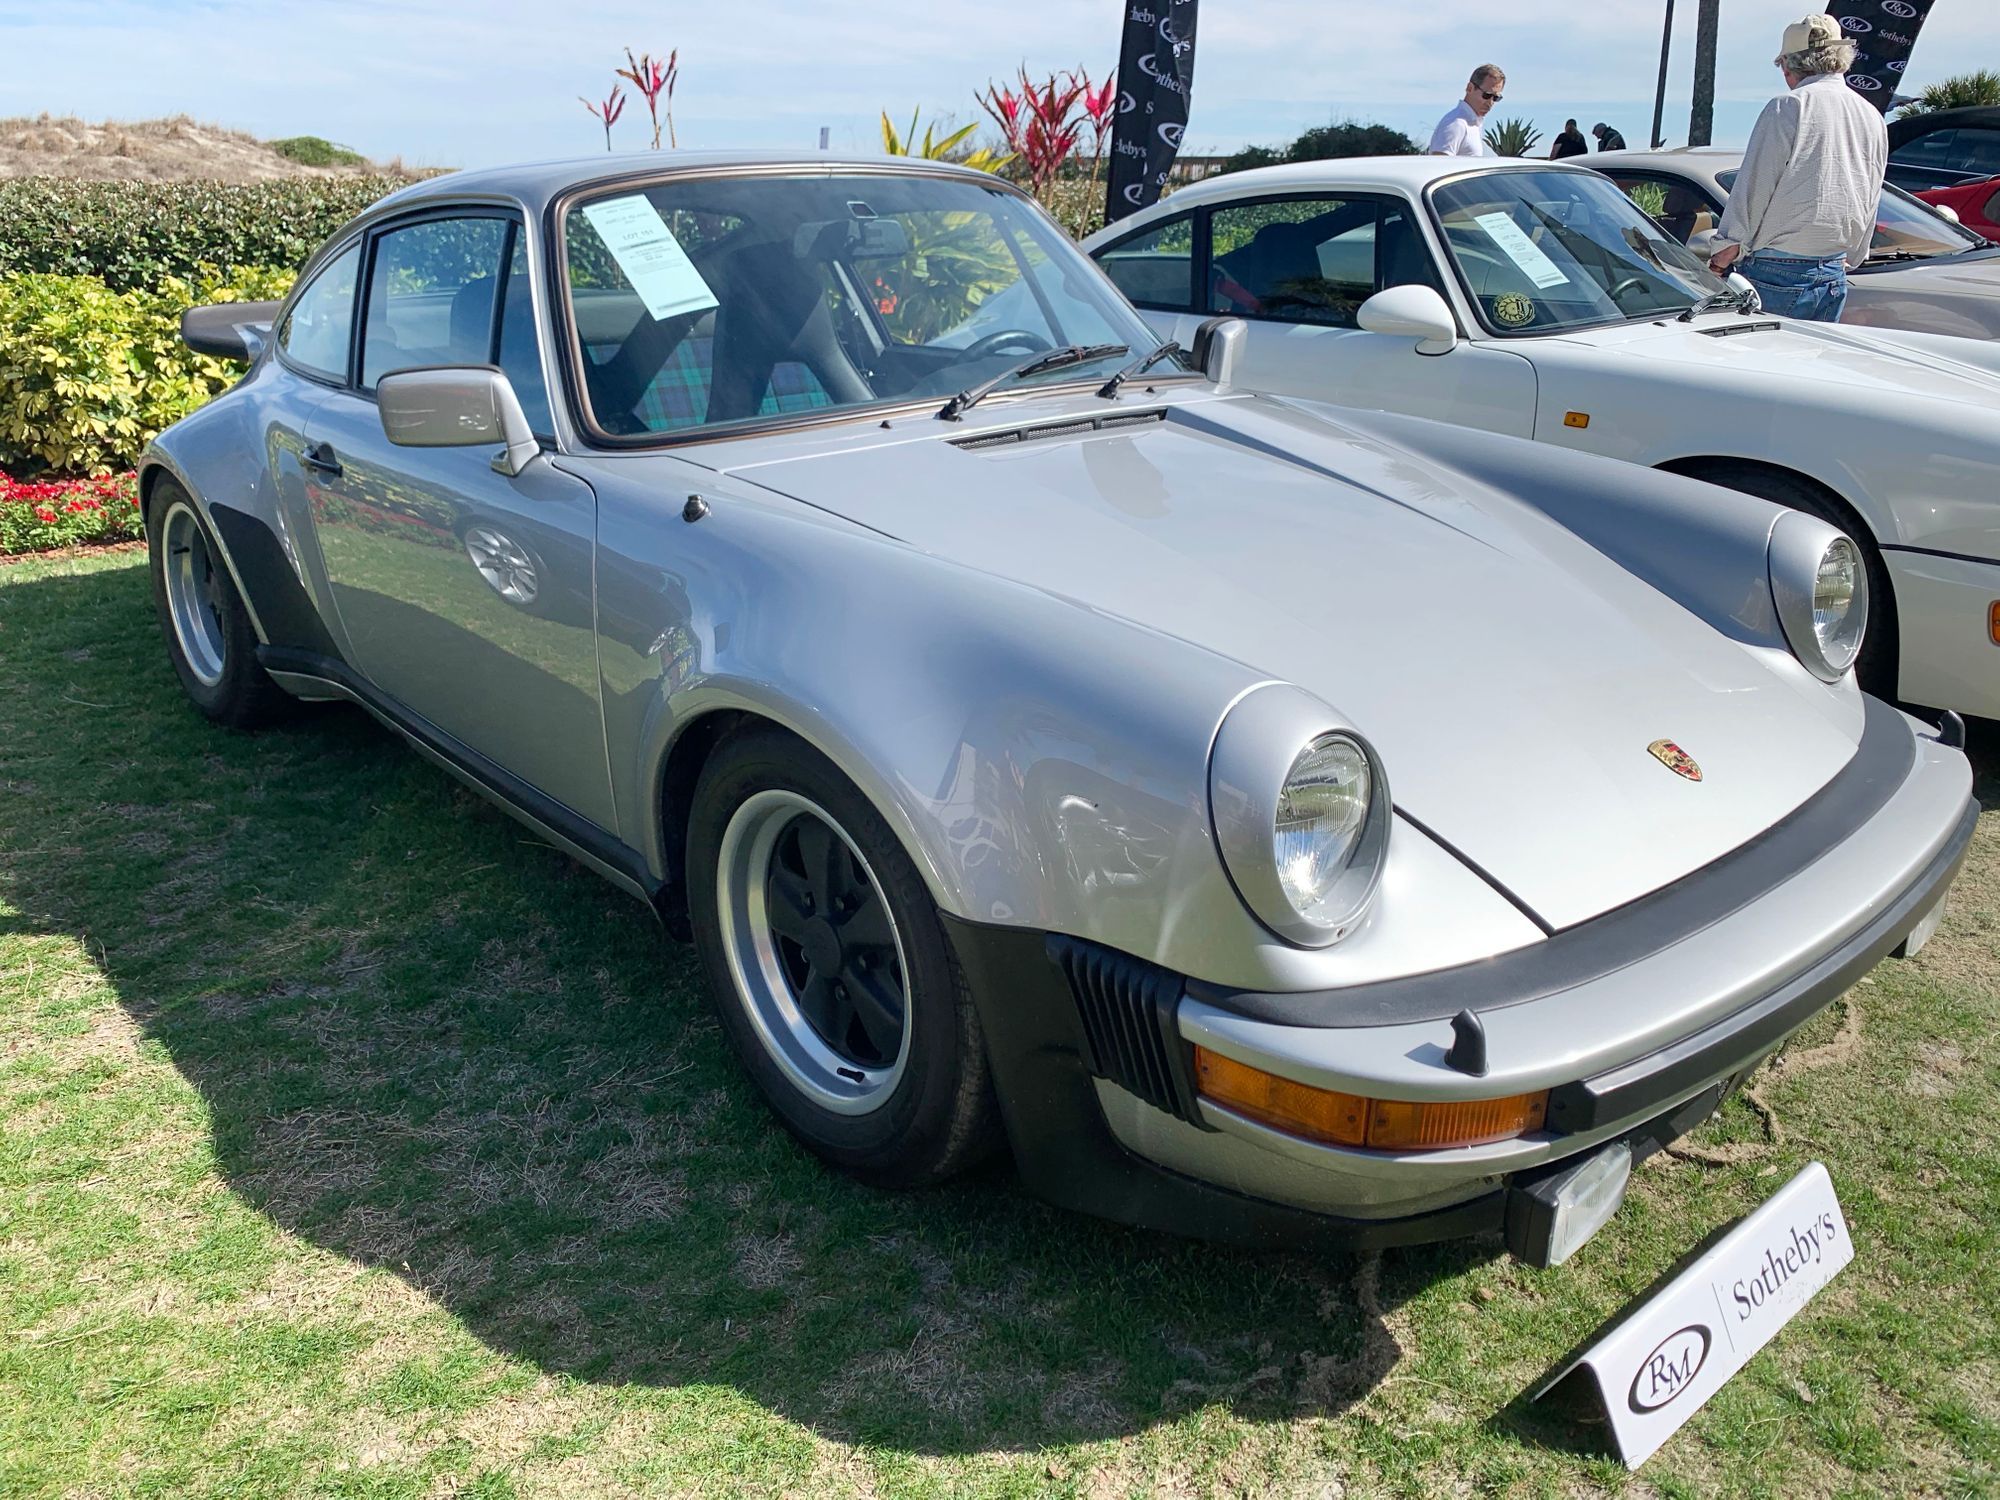 <img src="porsche.jpg" alt="a 1976 Porsche">